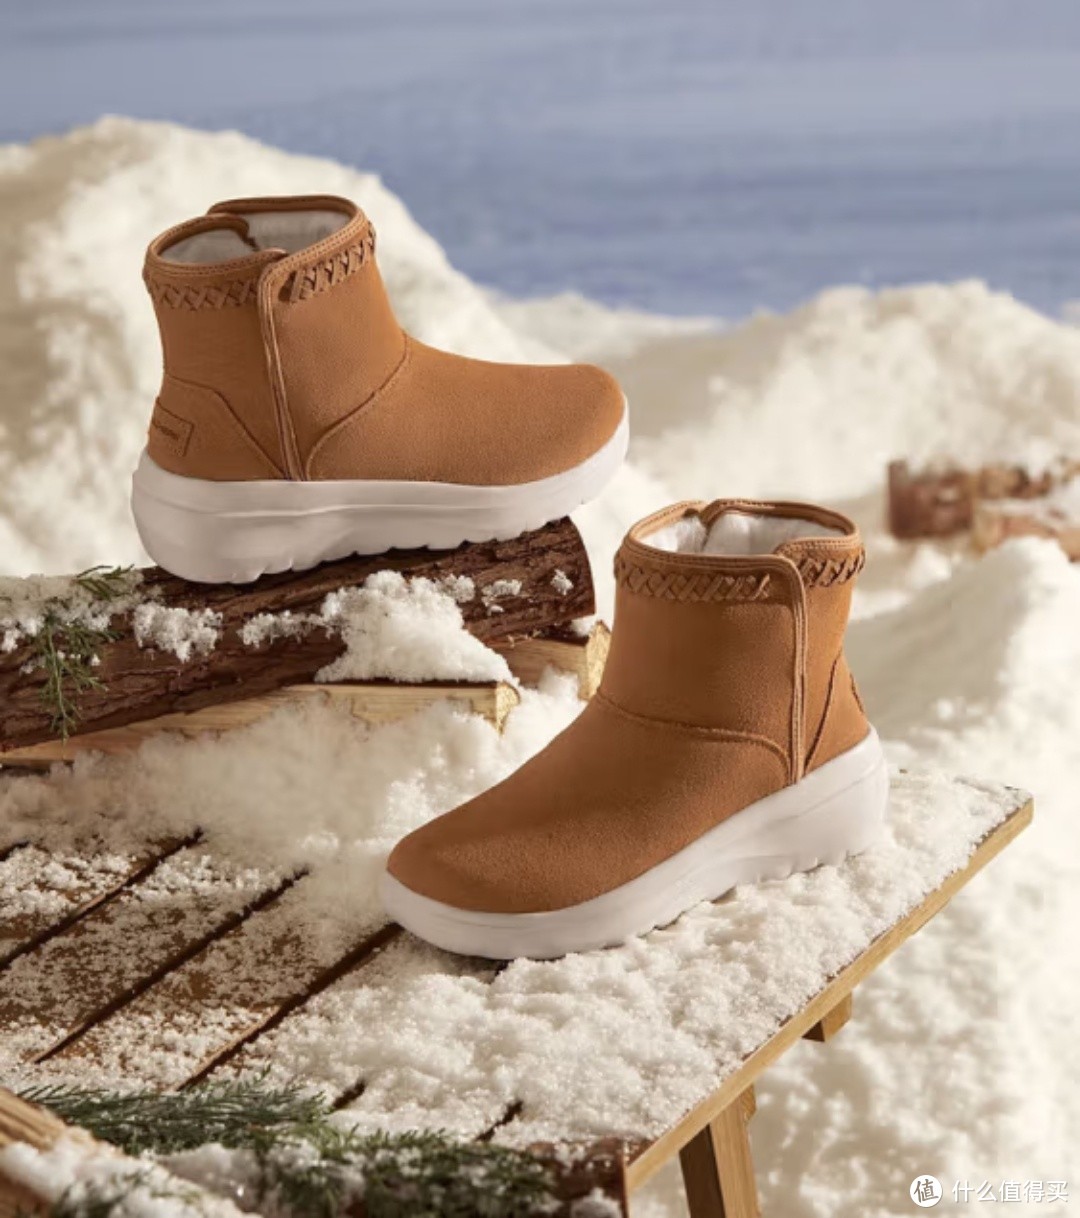 大雪纷飞的季节，来一双雪地靴保暖吧，我们一起踩雪去